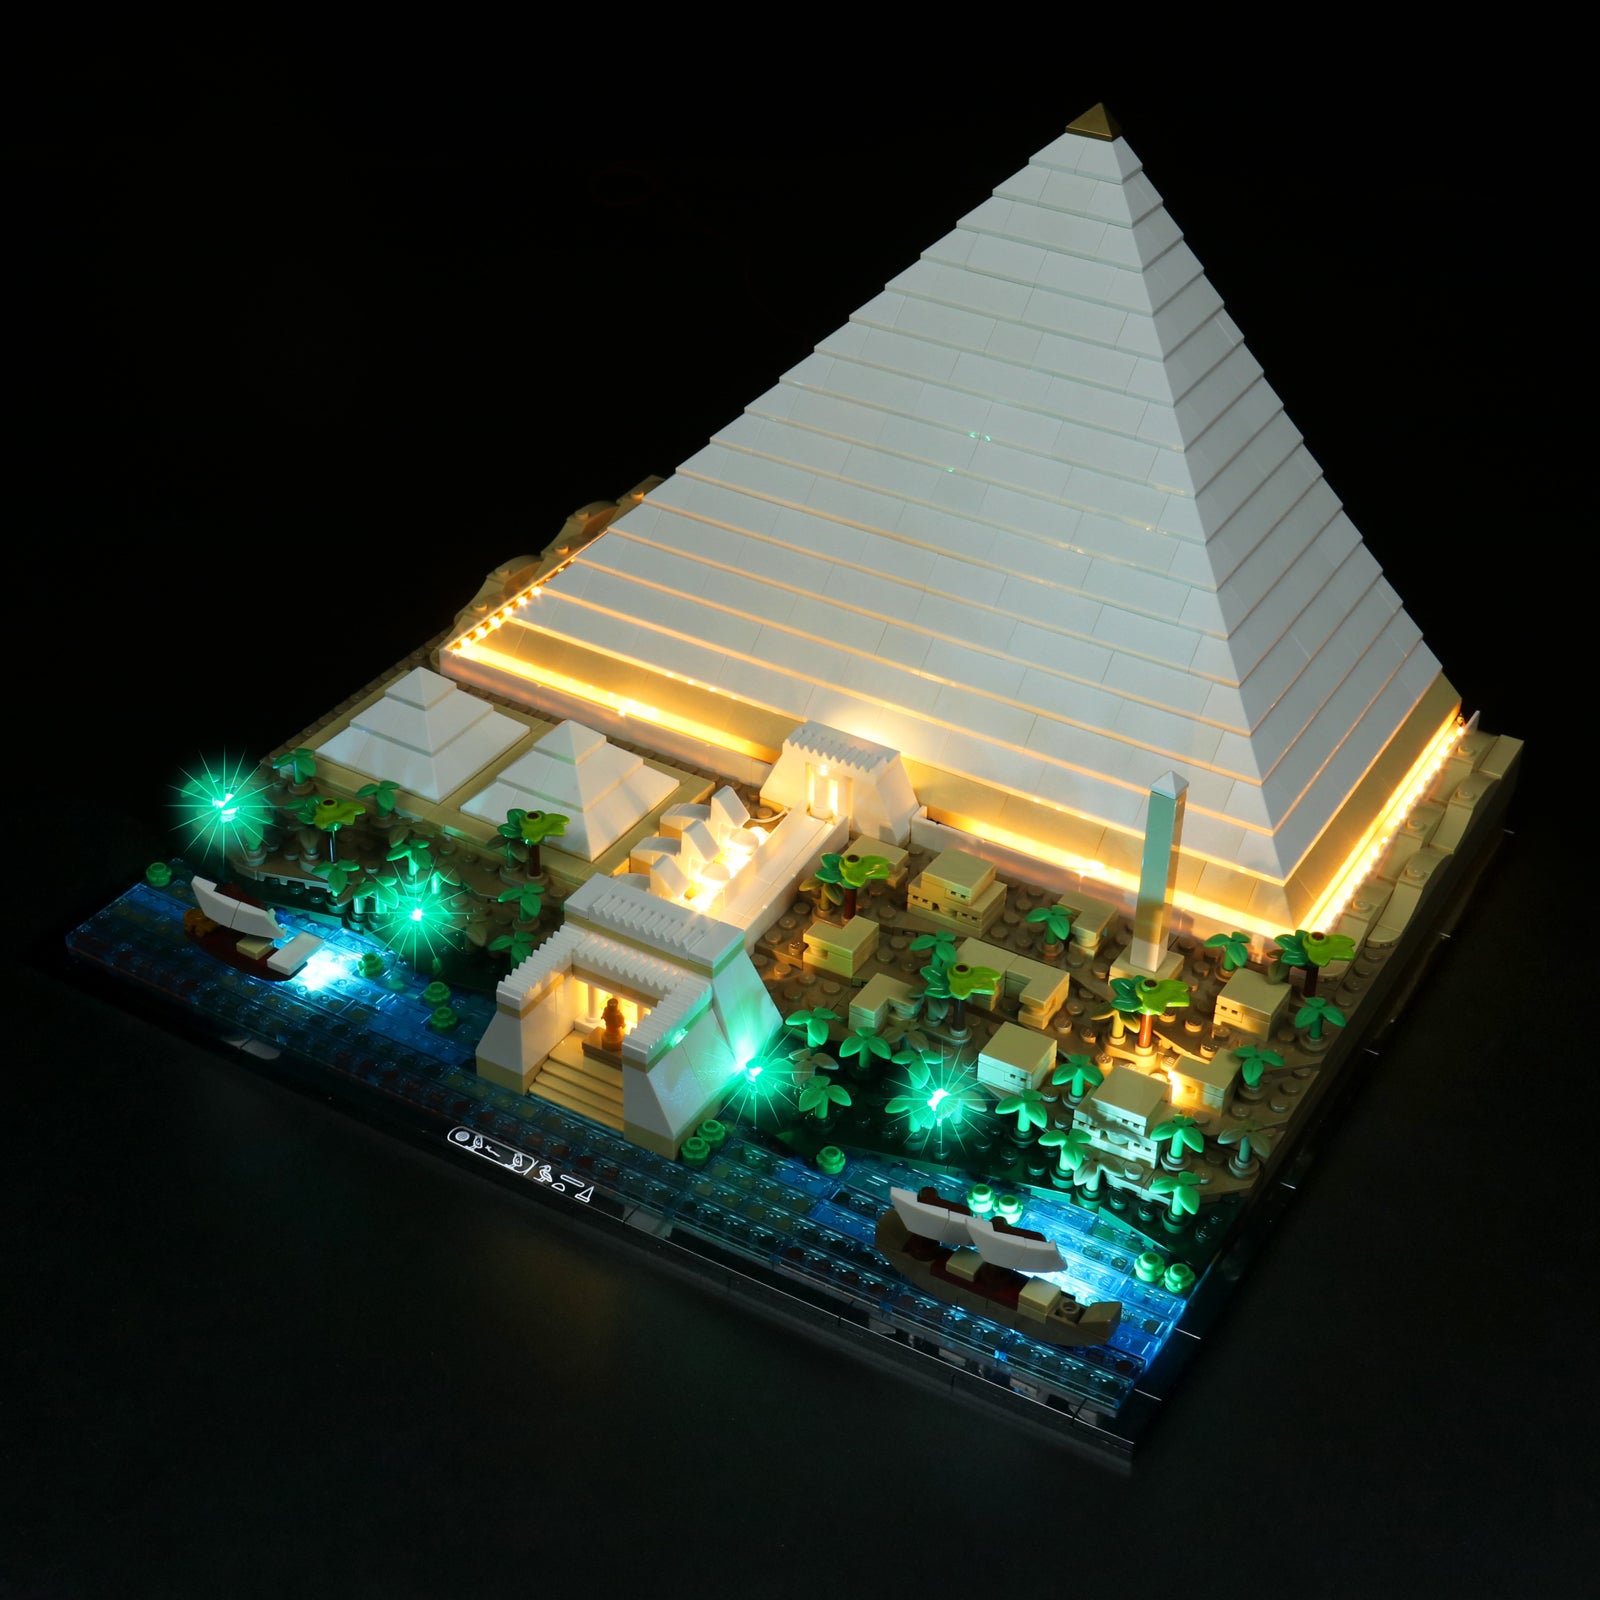 Architecture - La Grande Pyramide de Gizeh - LEGO